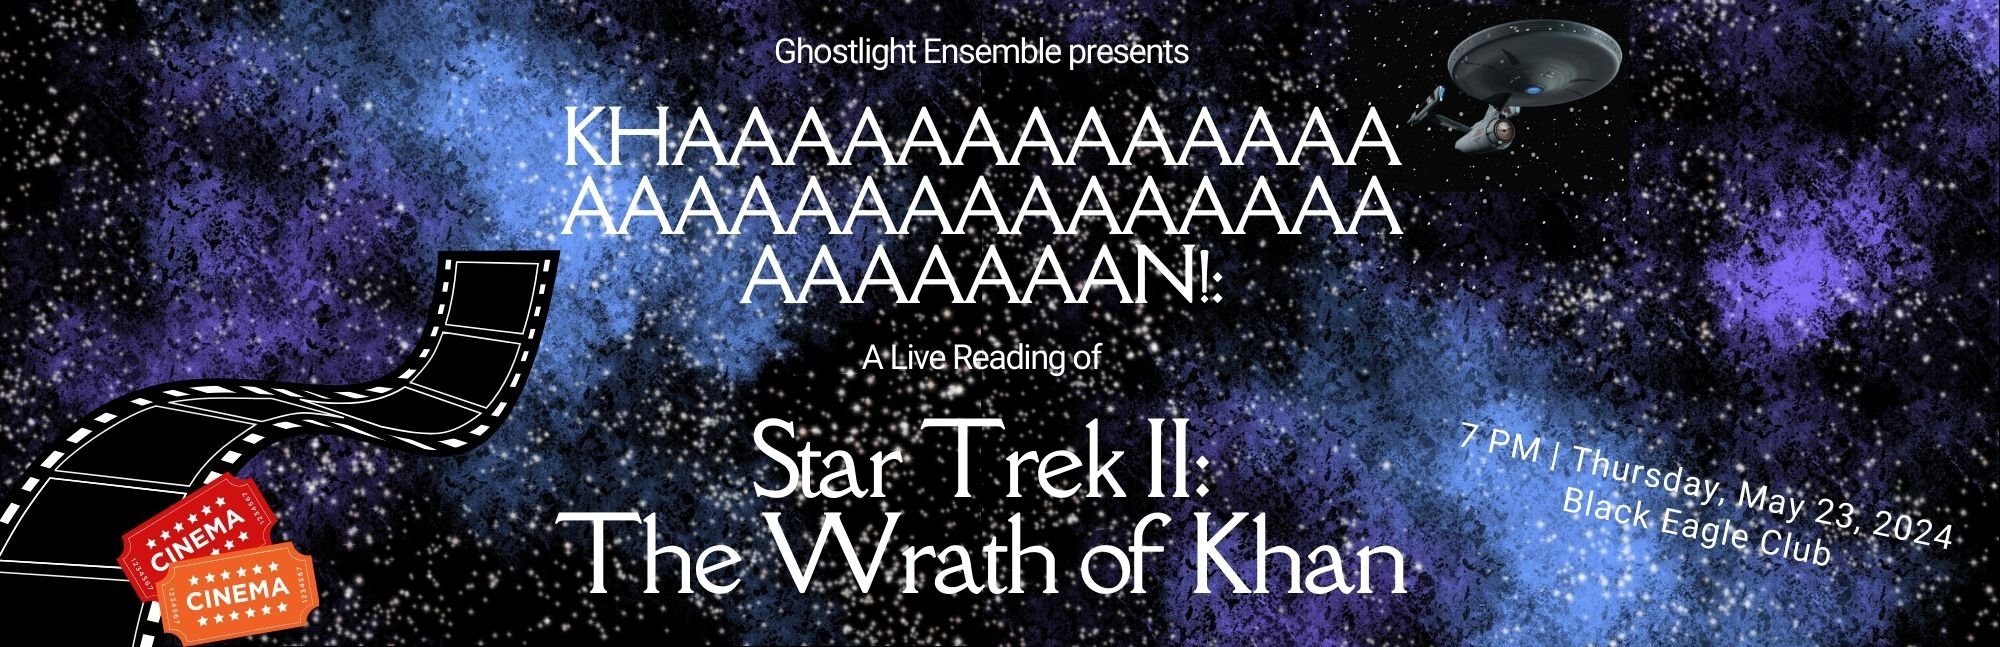 Khaaaaaaaaan: A Live Reading of Star Trek II: The Wrath of Khan